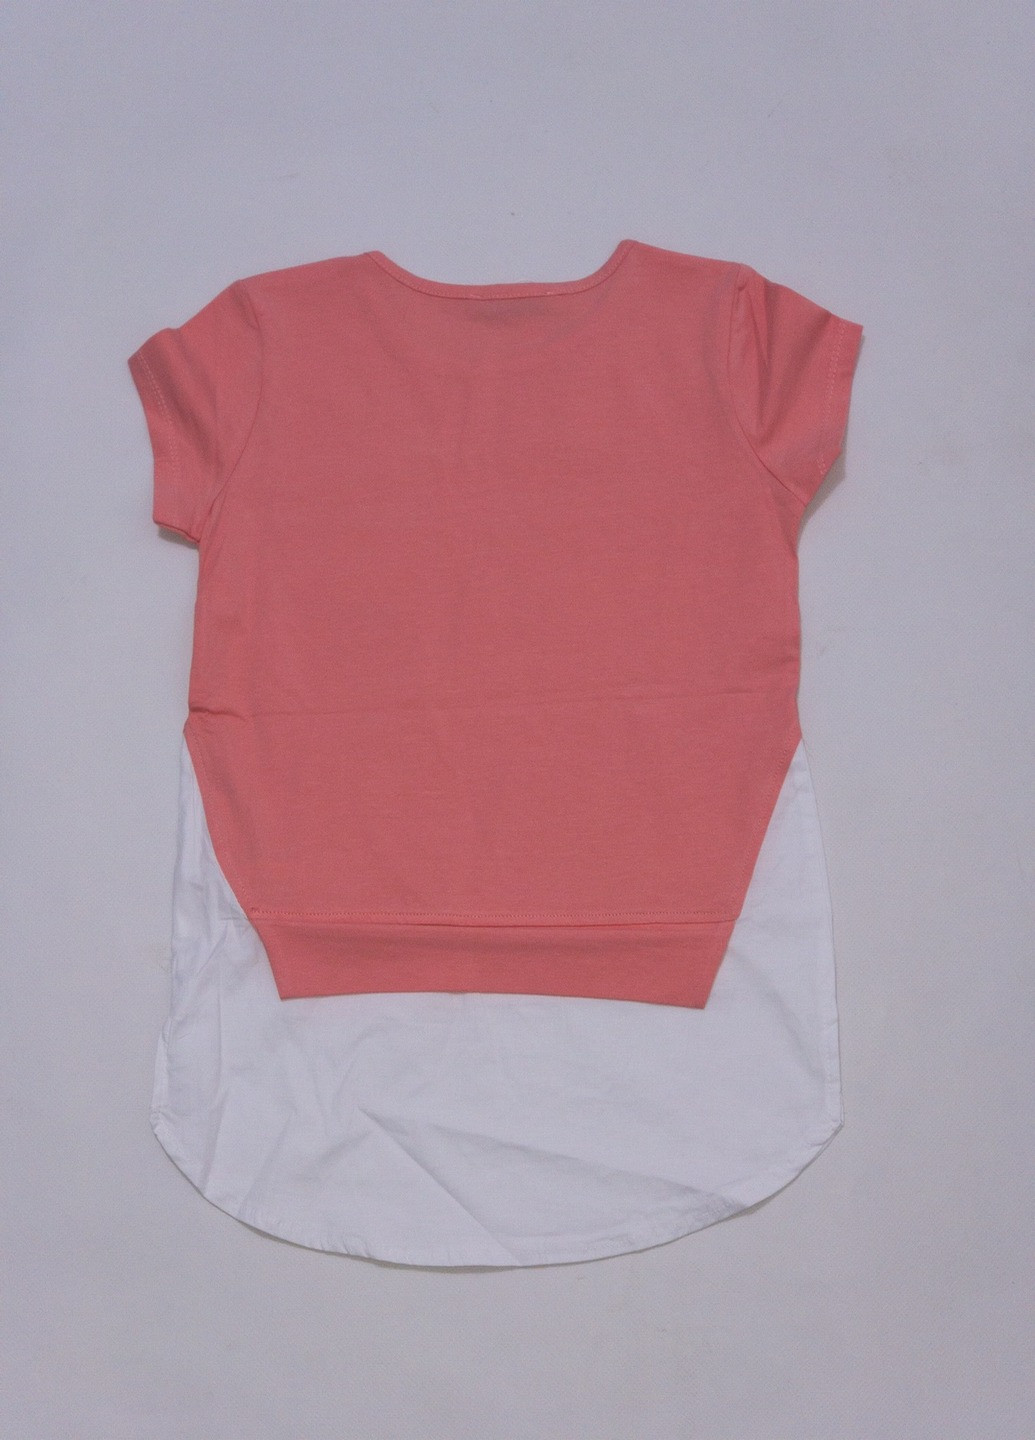 Персикова літня футболка дитяча для дівчинки Turkey